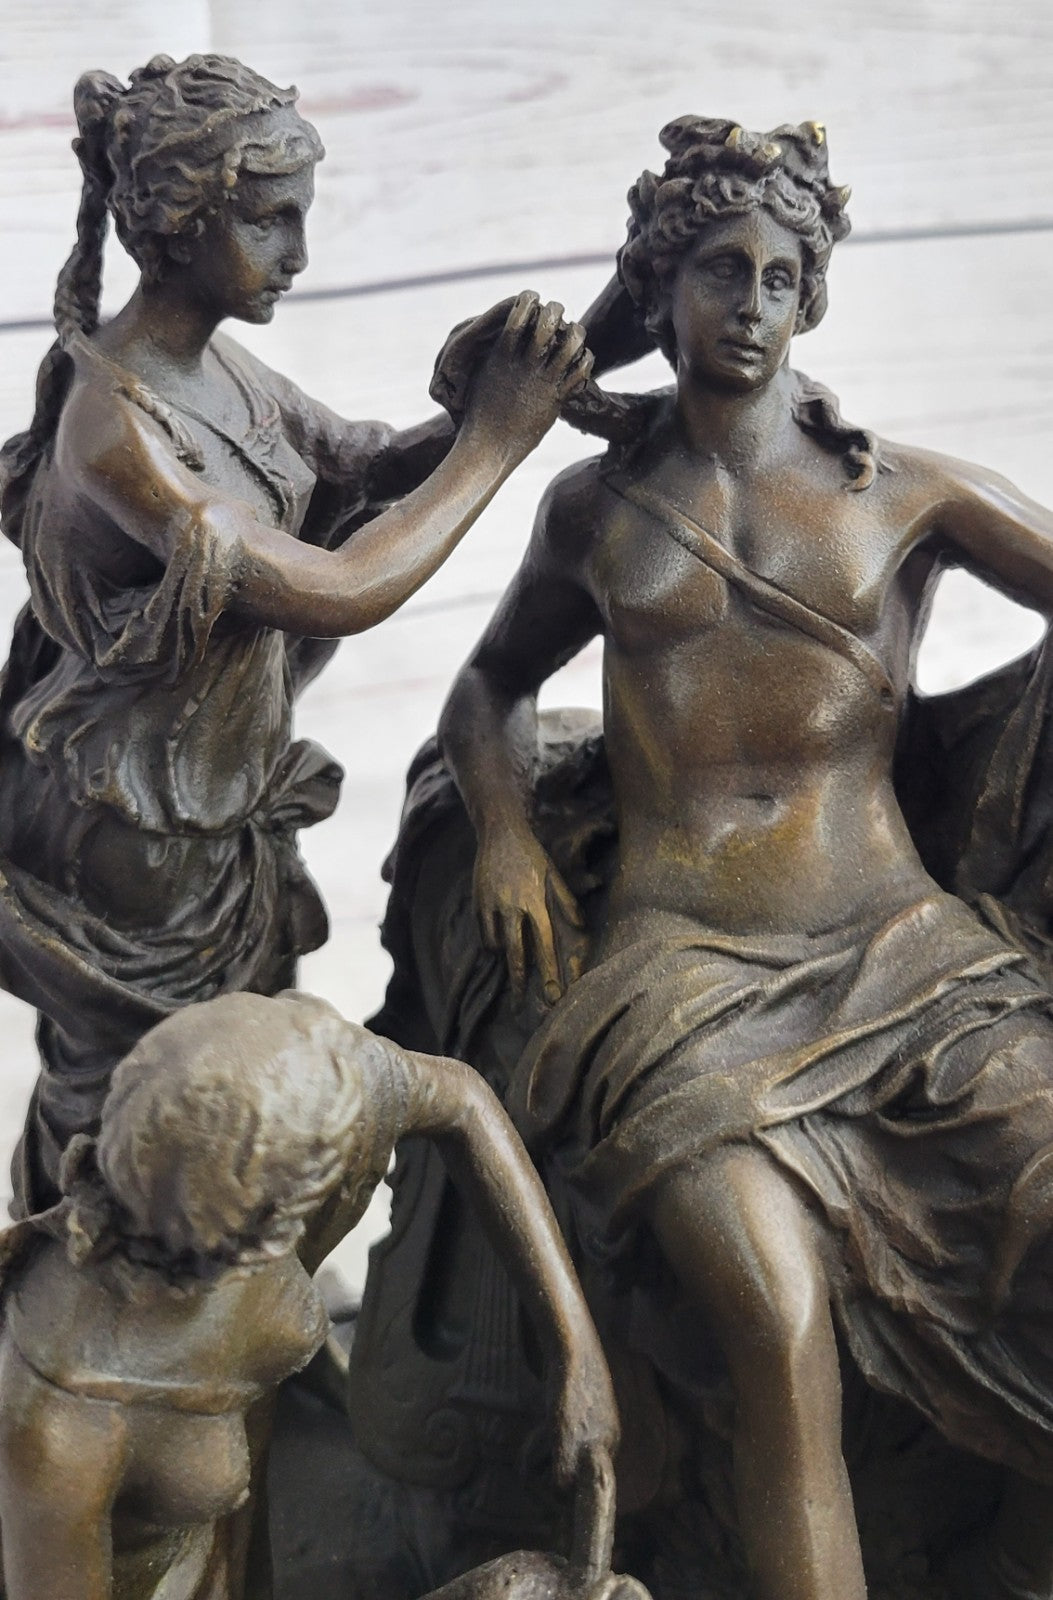 Handcrafted bronze sculpture SALE Nude 4 By Pampered God Greek Signed Original